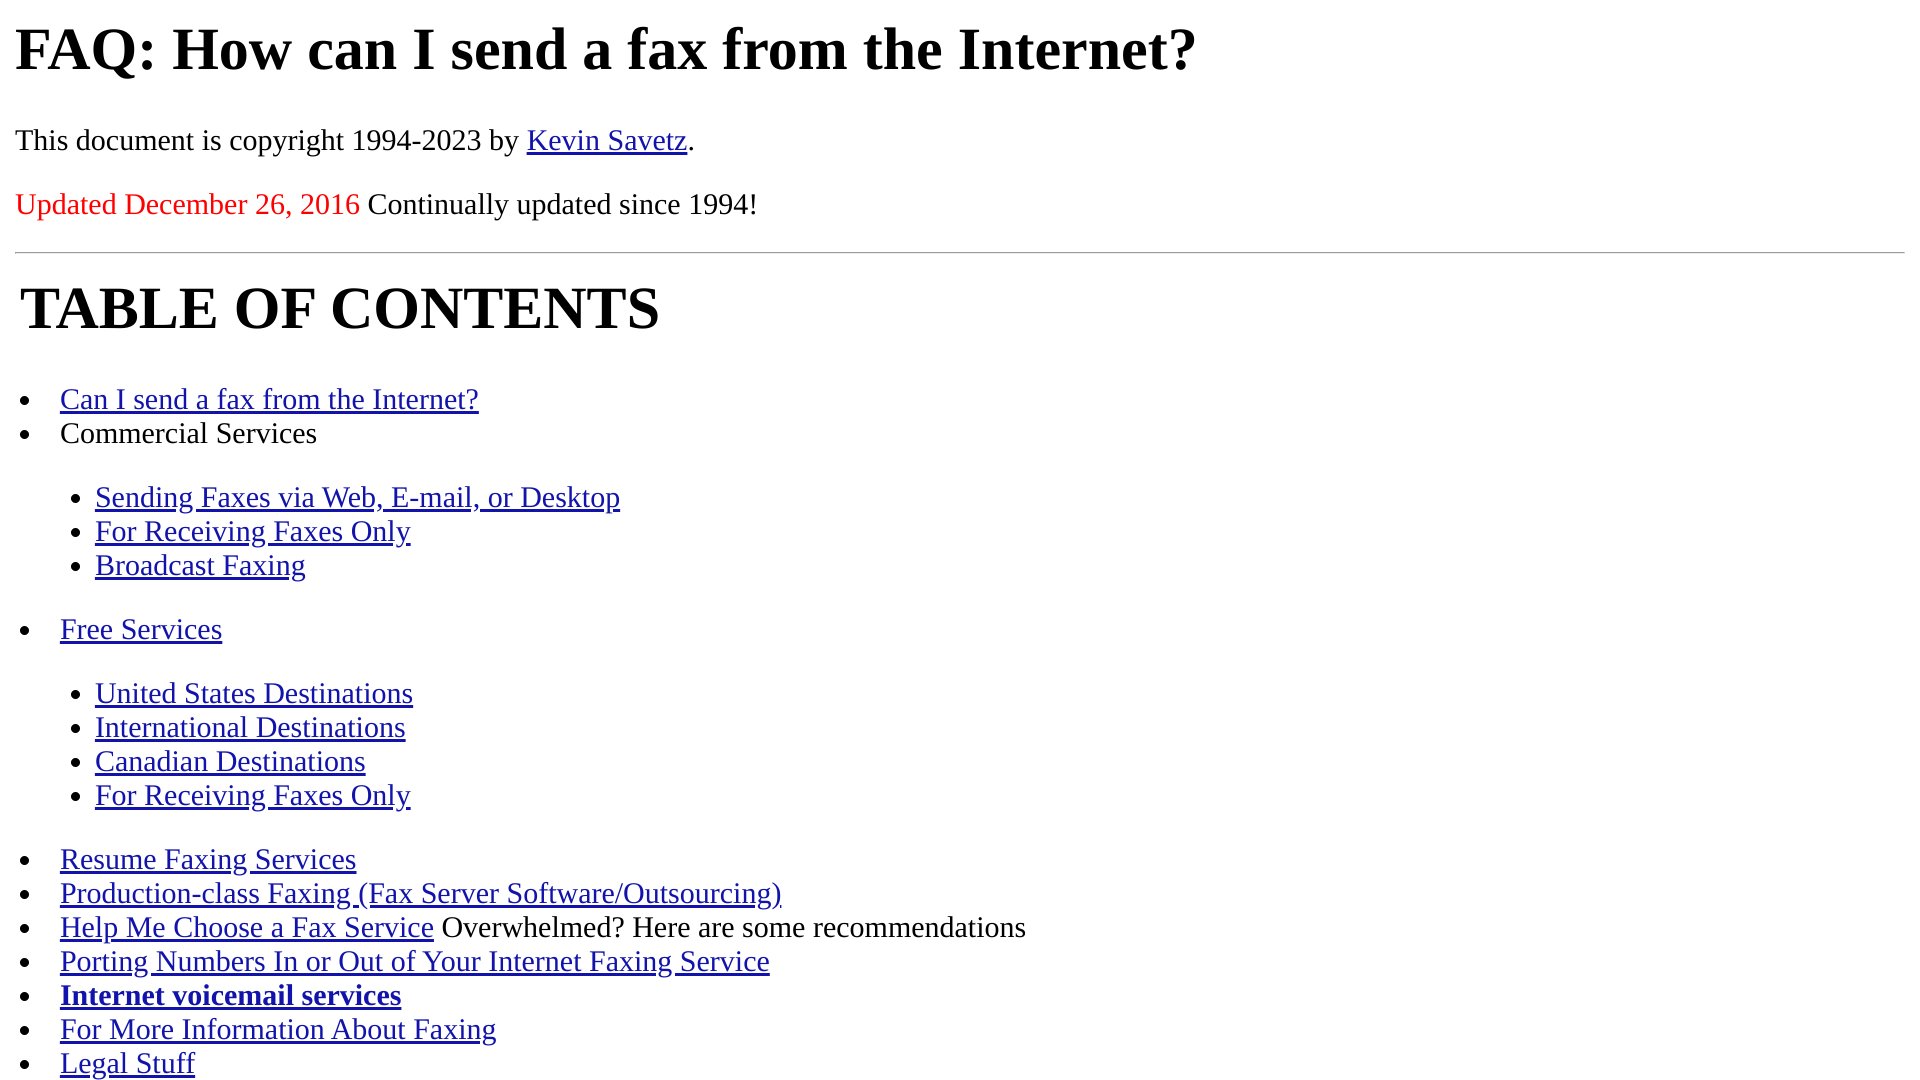 Internet fax FAQ